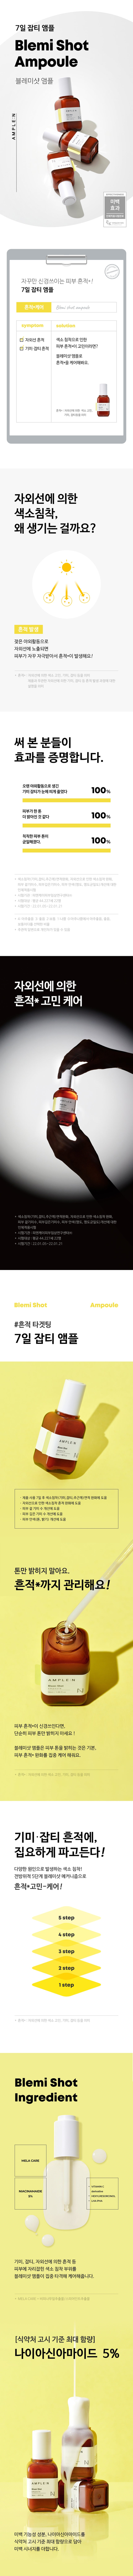 Coreana Ample N Blemi shot ampoule 50ml - testerkorea